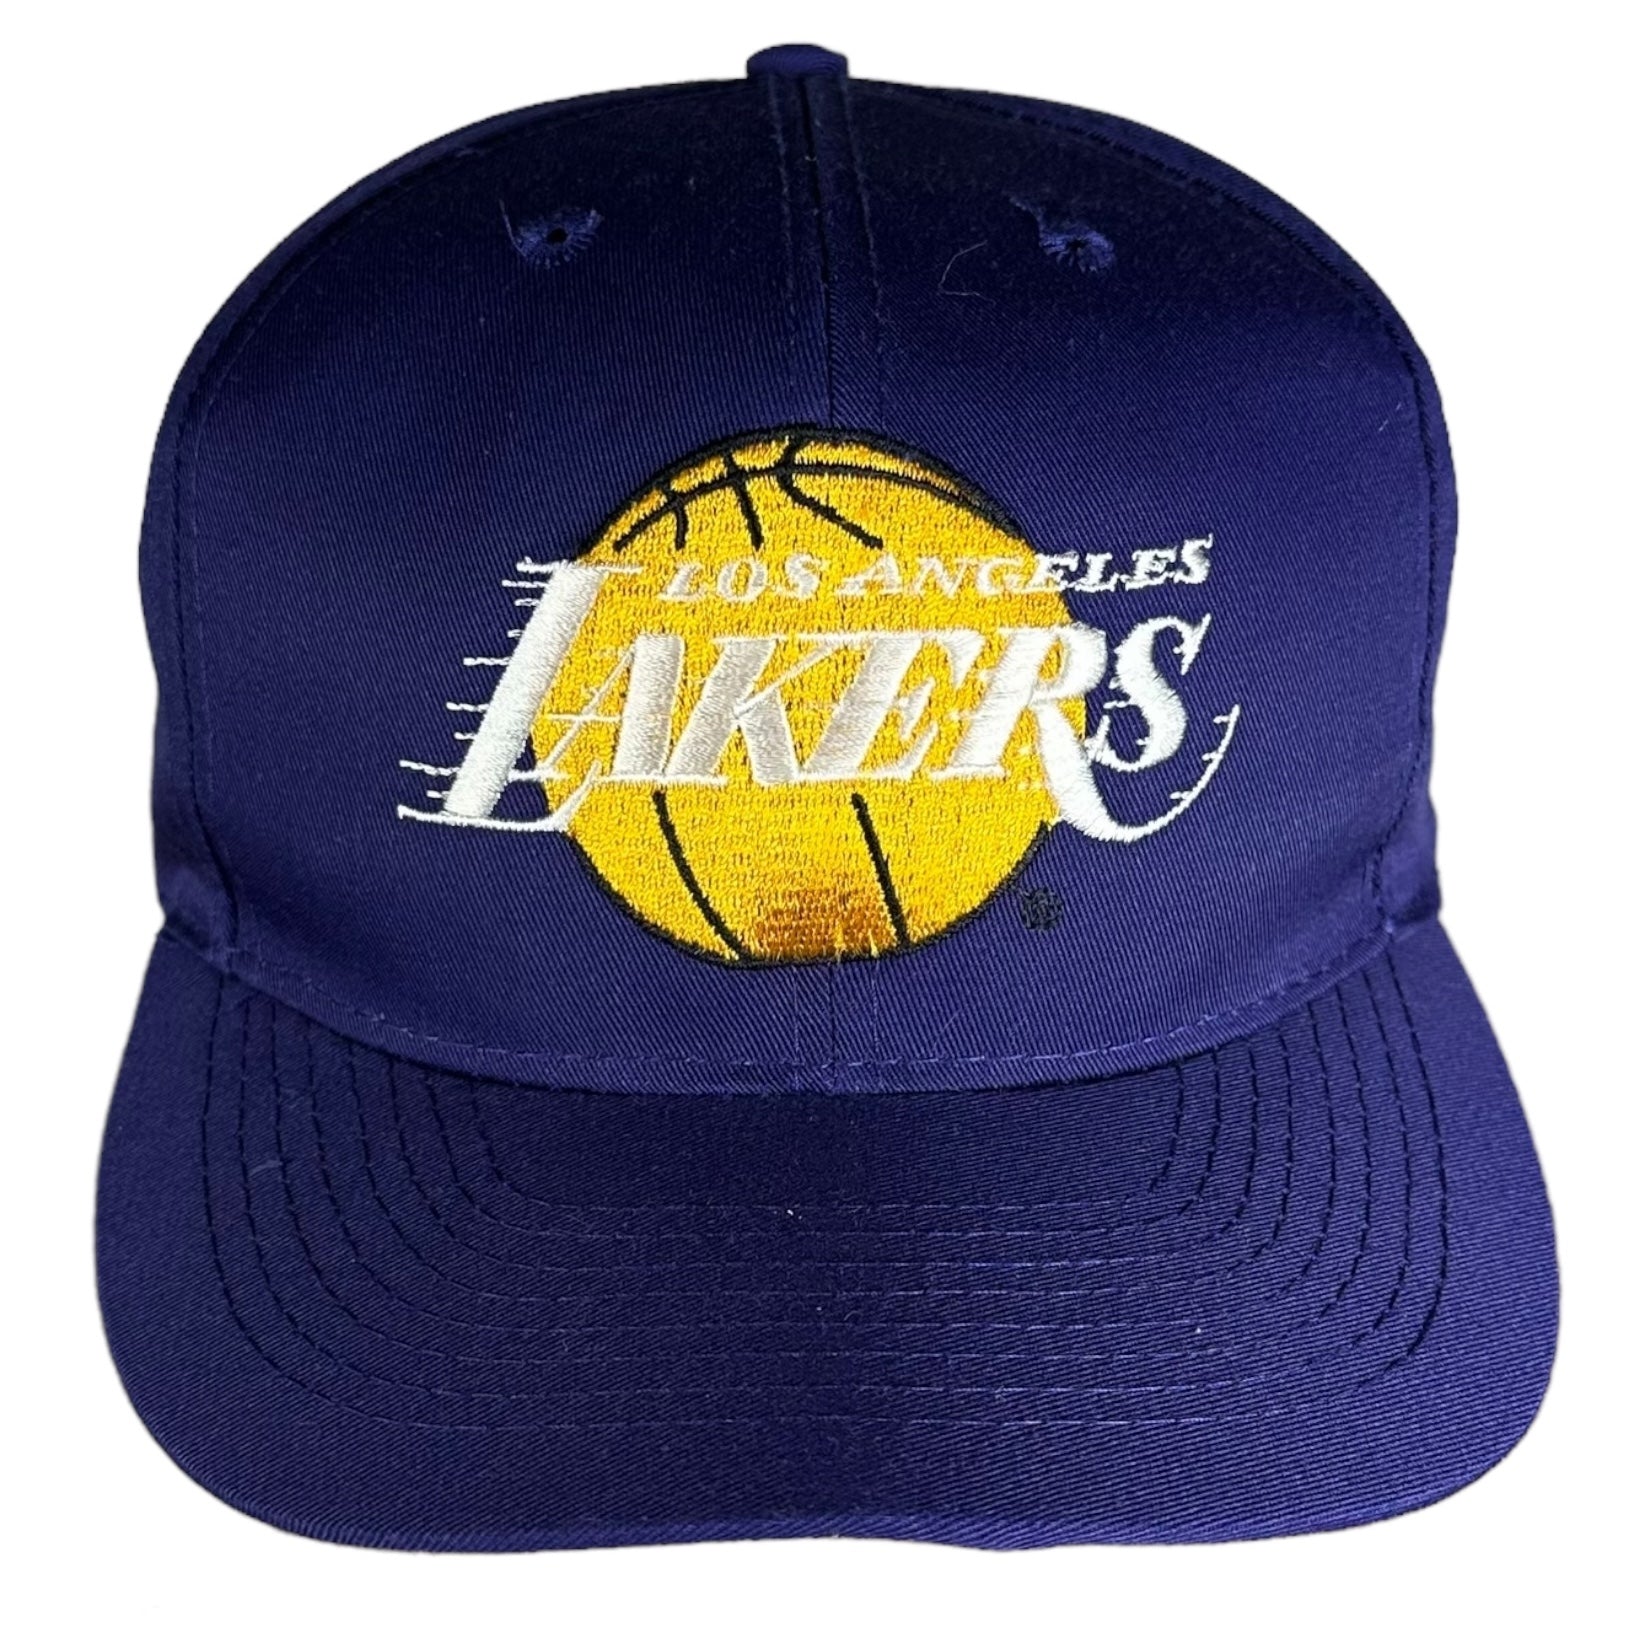 Vintage Los Angeles Lakers Snapback Hat